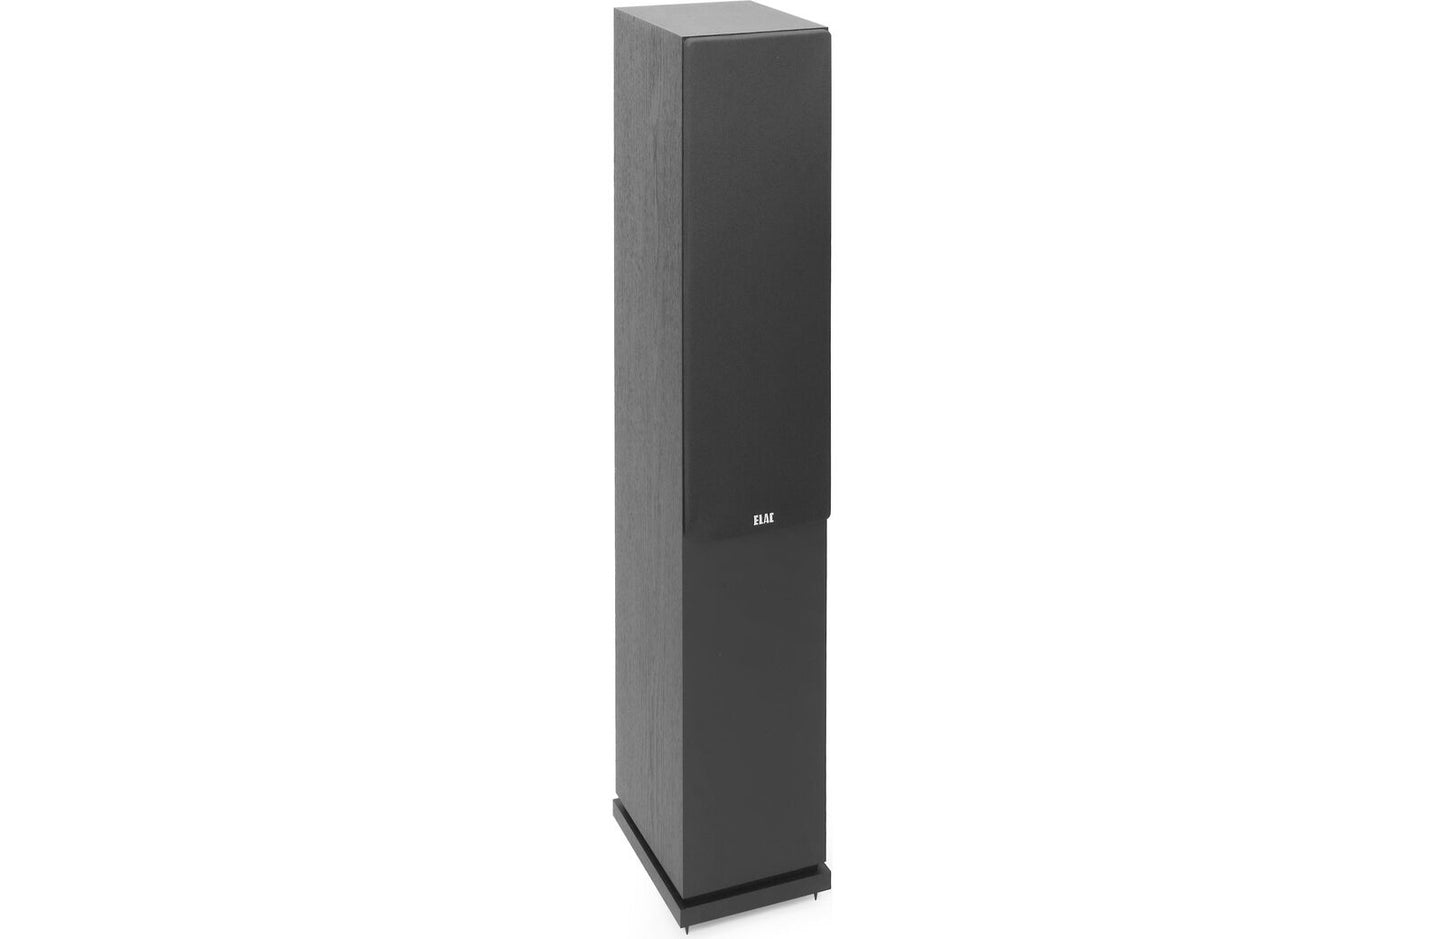 ELAC DF52-BK Debut 2.0 F5.2 Floorstanding Speaker